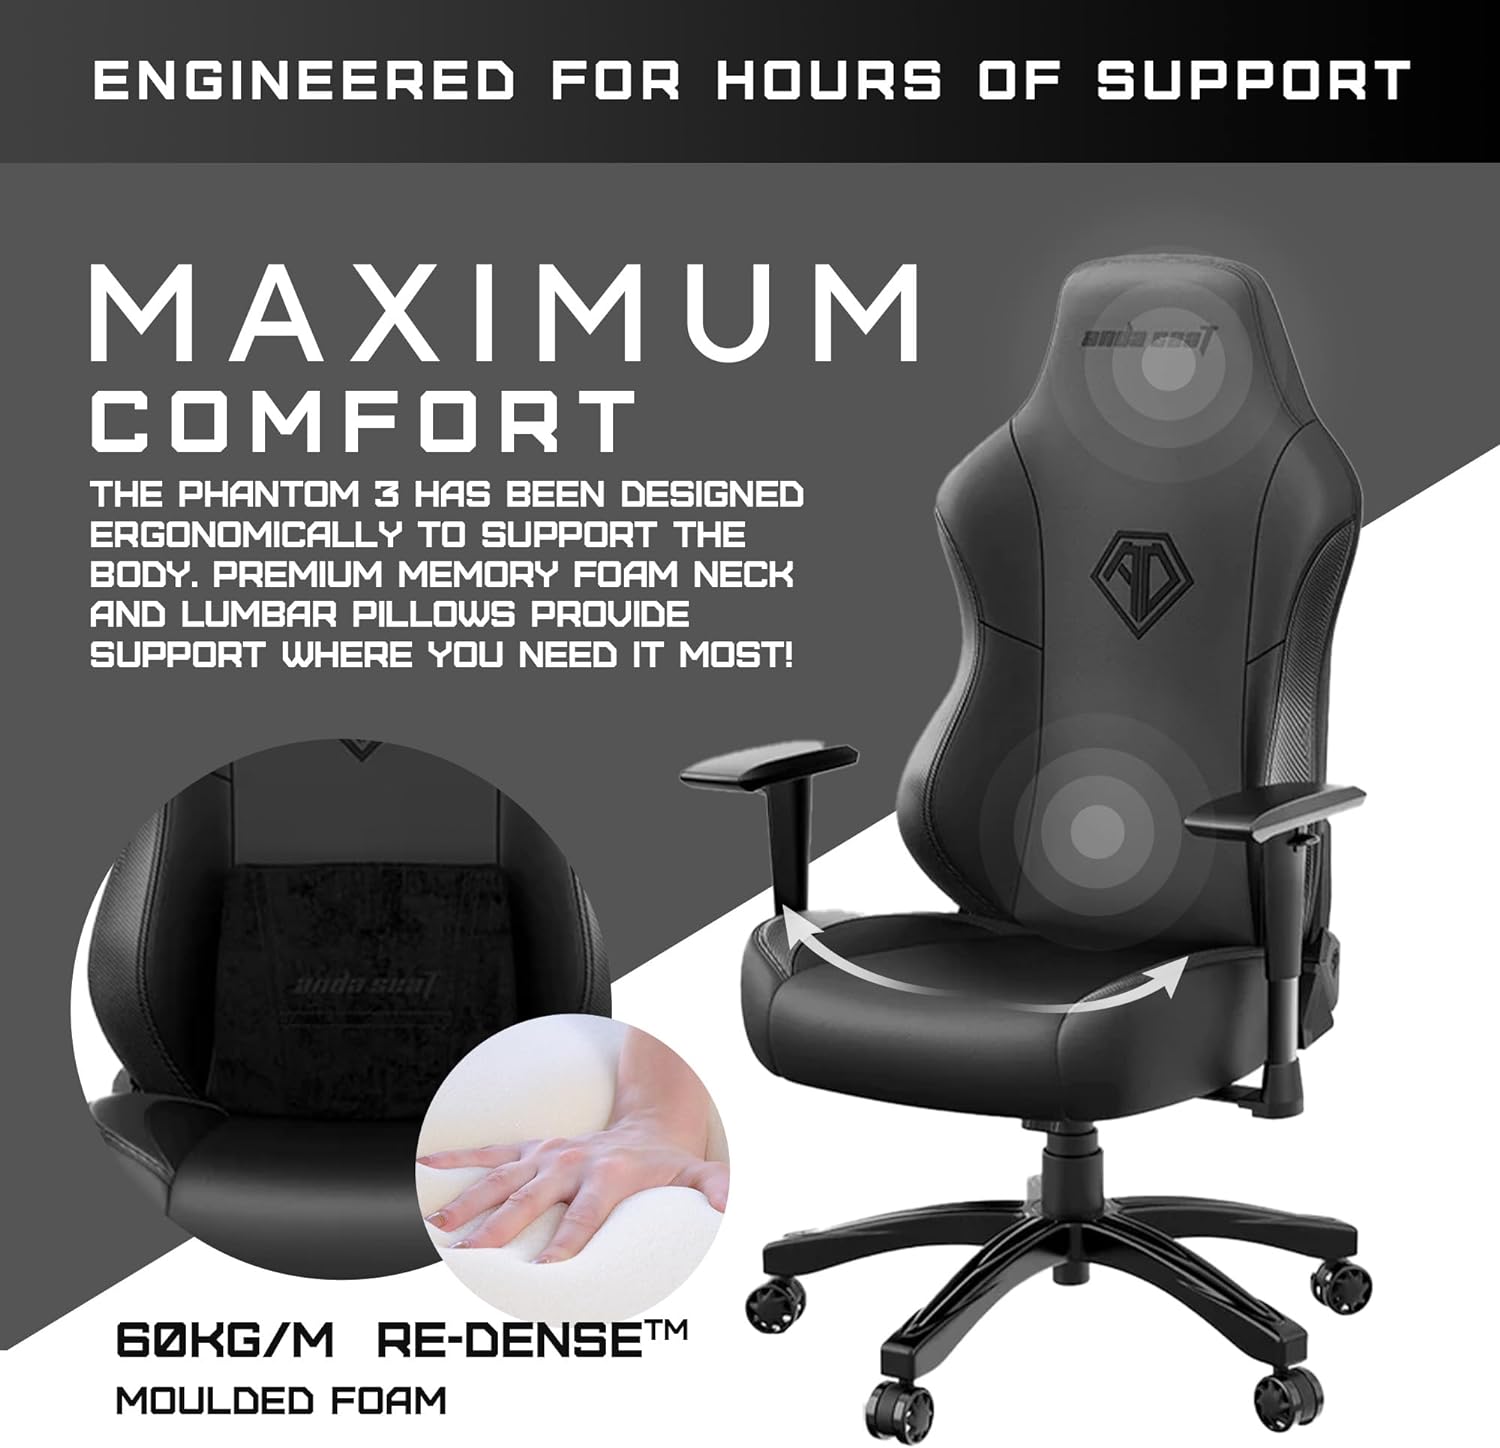 Anda Seat Phantom 3 Series Premium Gaming Chair - Black